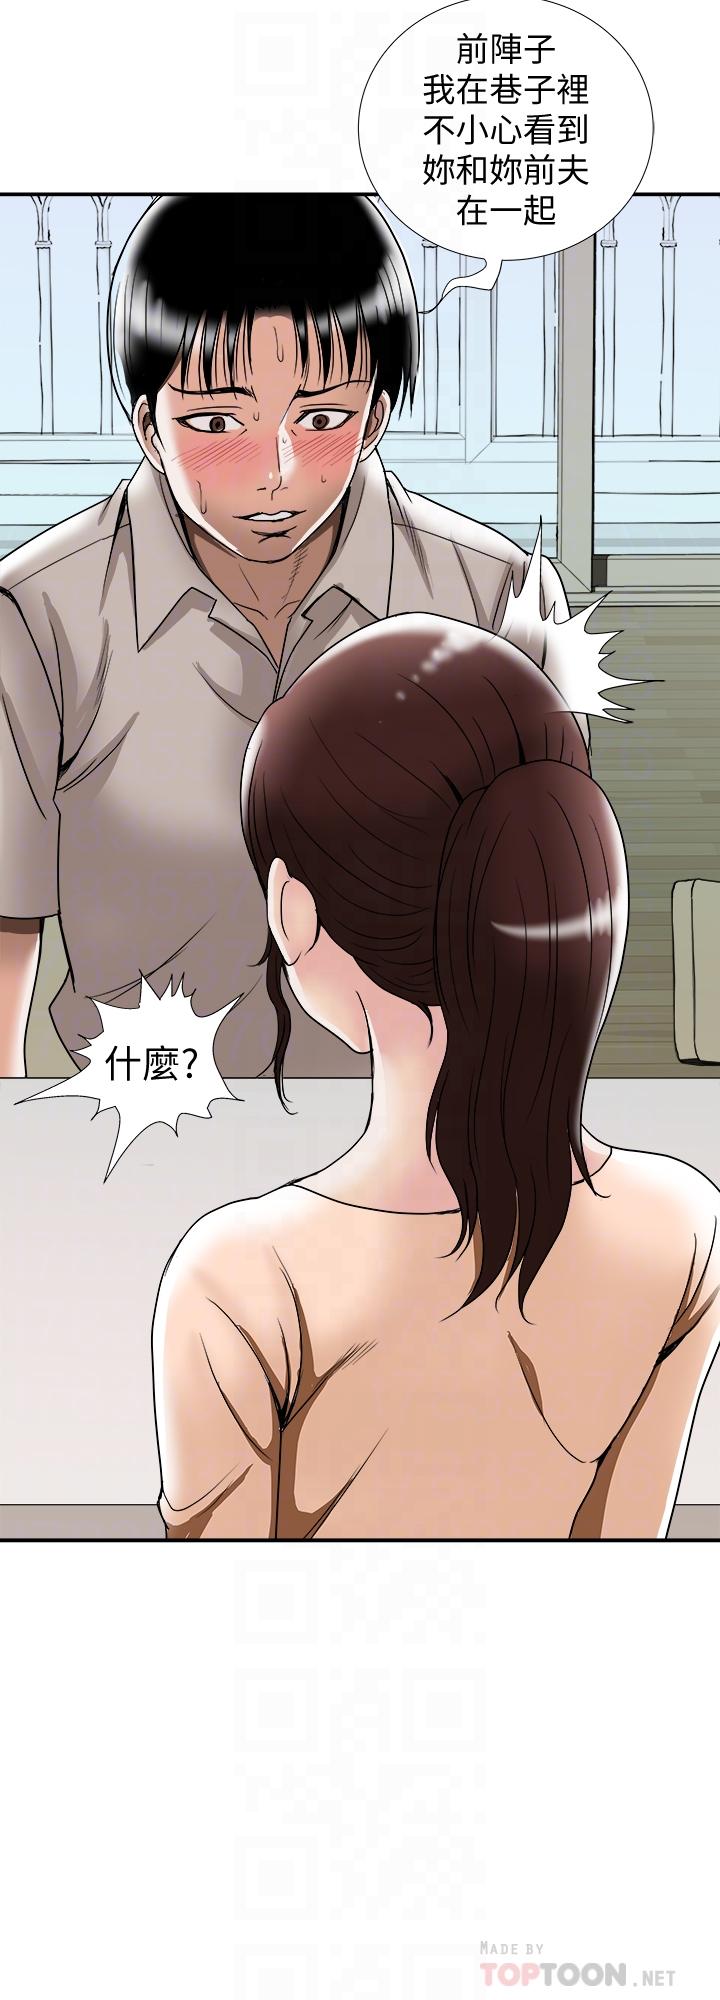 韩国污漫画 別人的老婆 第91话(第2季)-彩莲倾吐而出的心里话 8